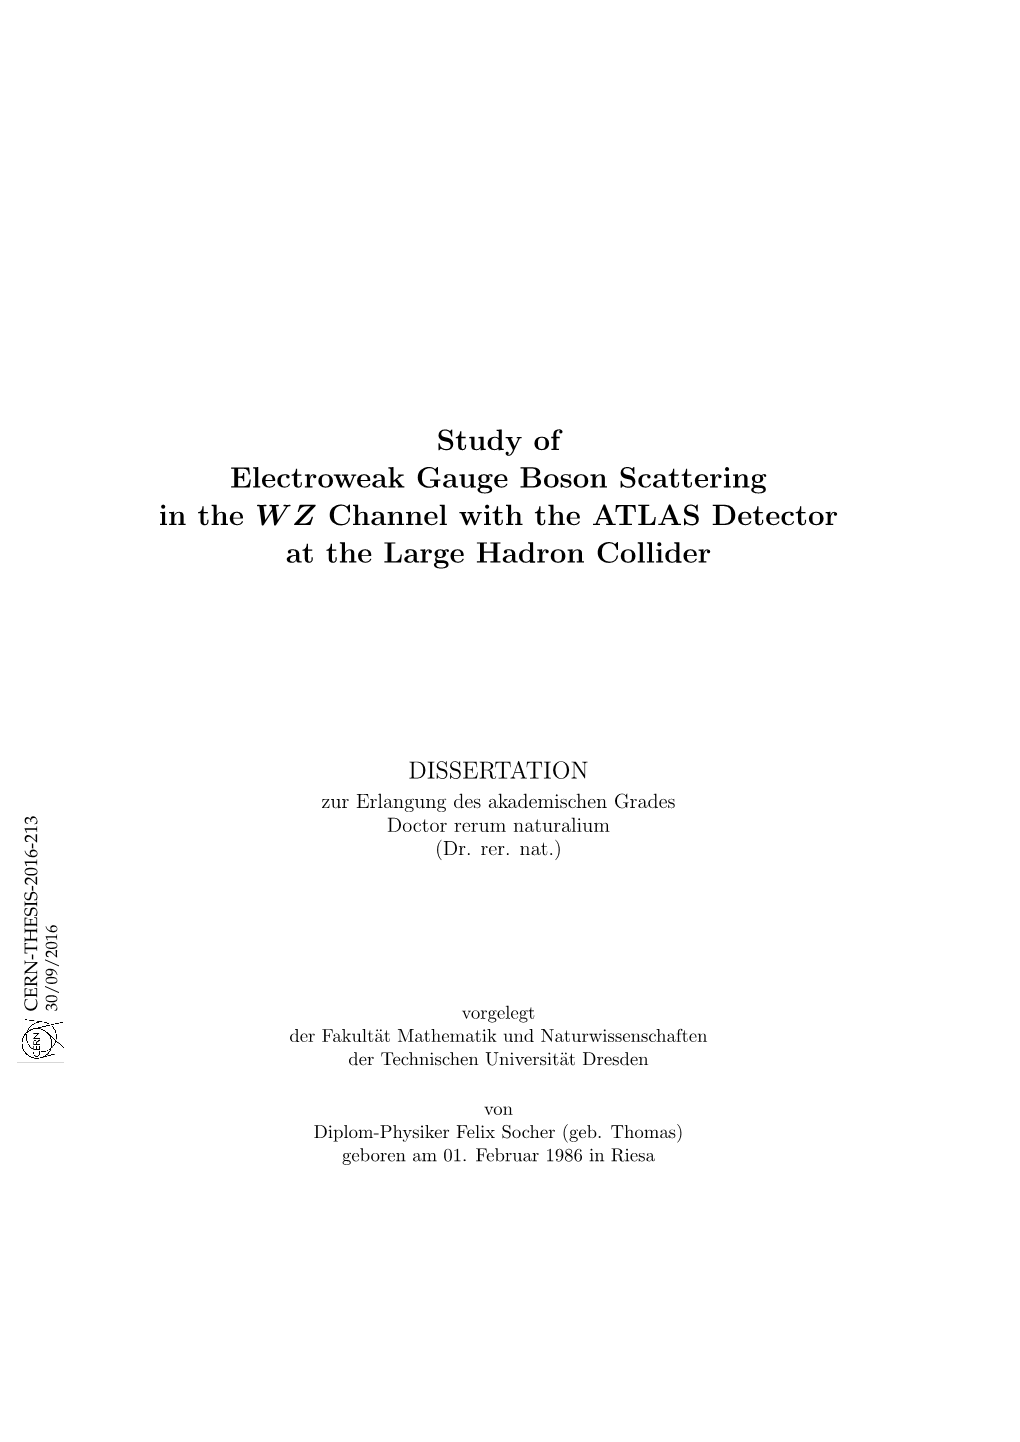 Study of Electroweak Gauge Boson Scattering in the WZ Channel